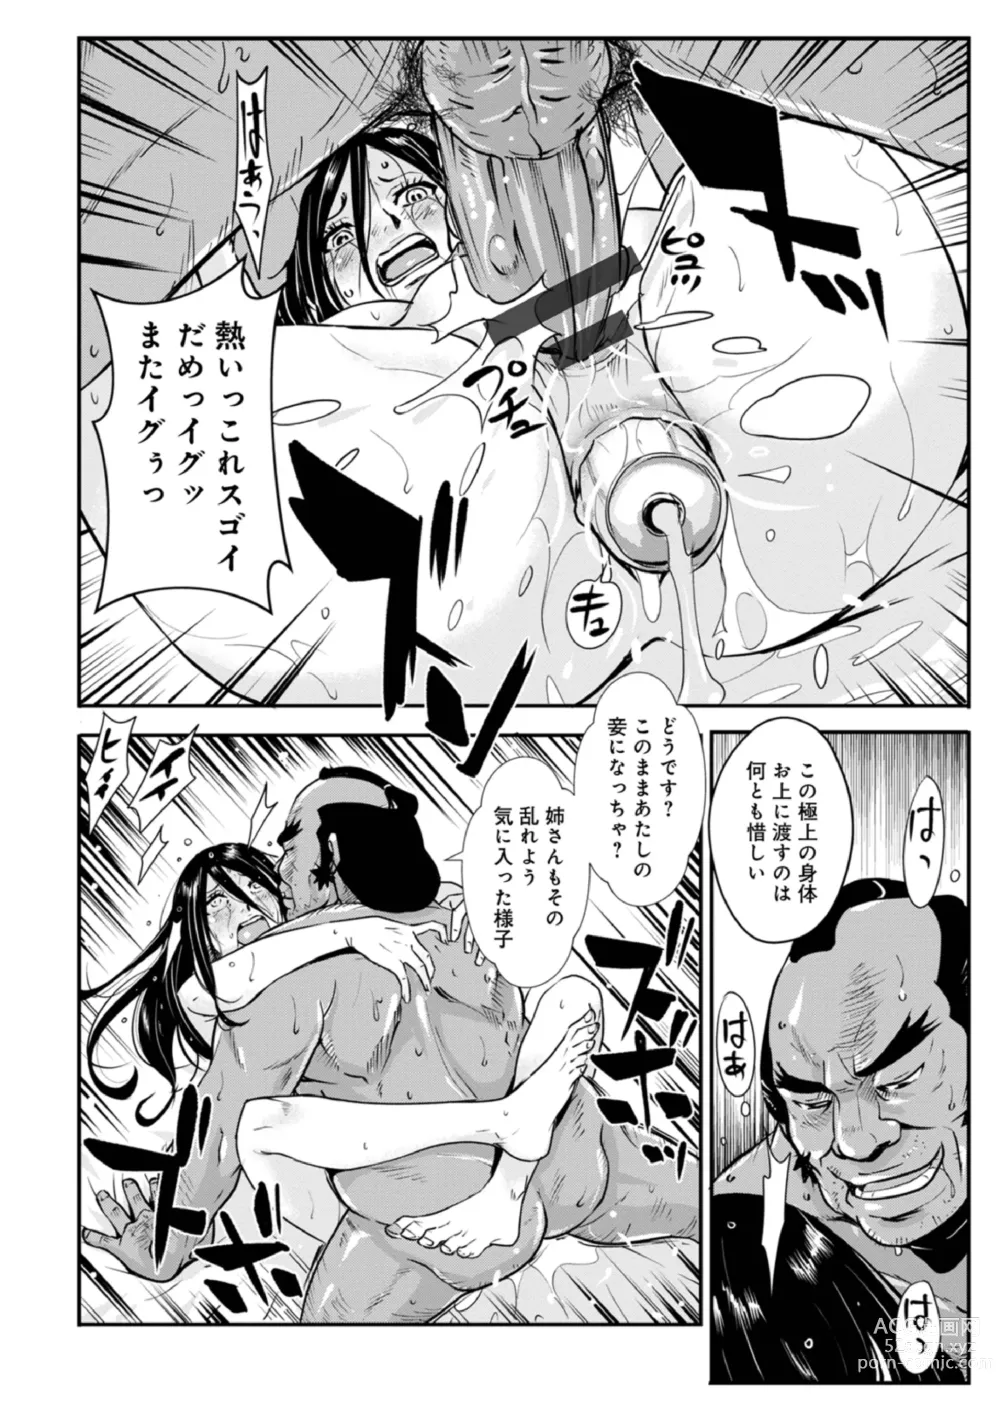 Page 16 of manga Harami samurai 15 ~Biyaku ni Nureru Onna Kenshi no Inwai na Nikutsubo~